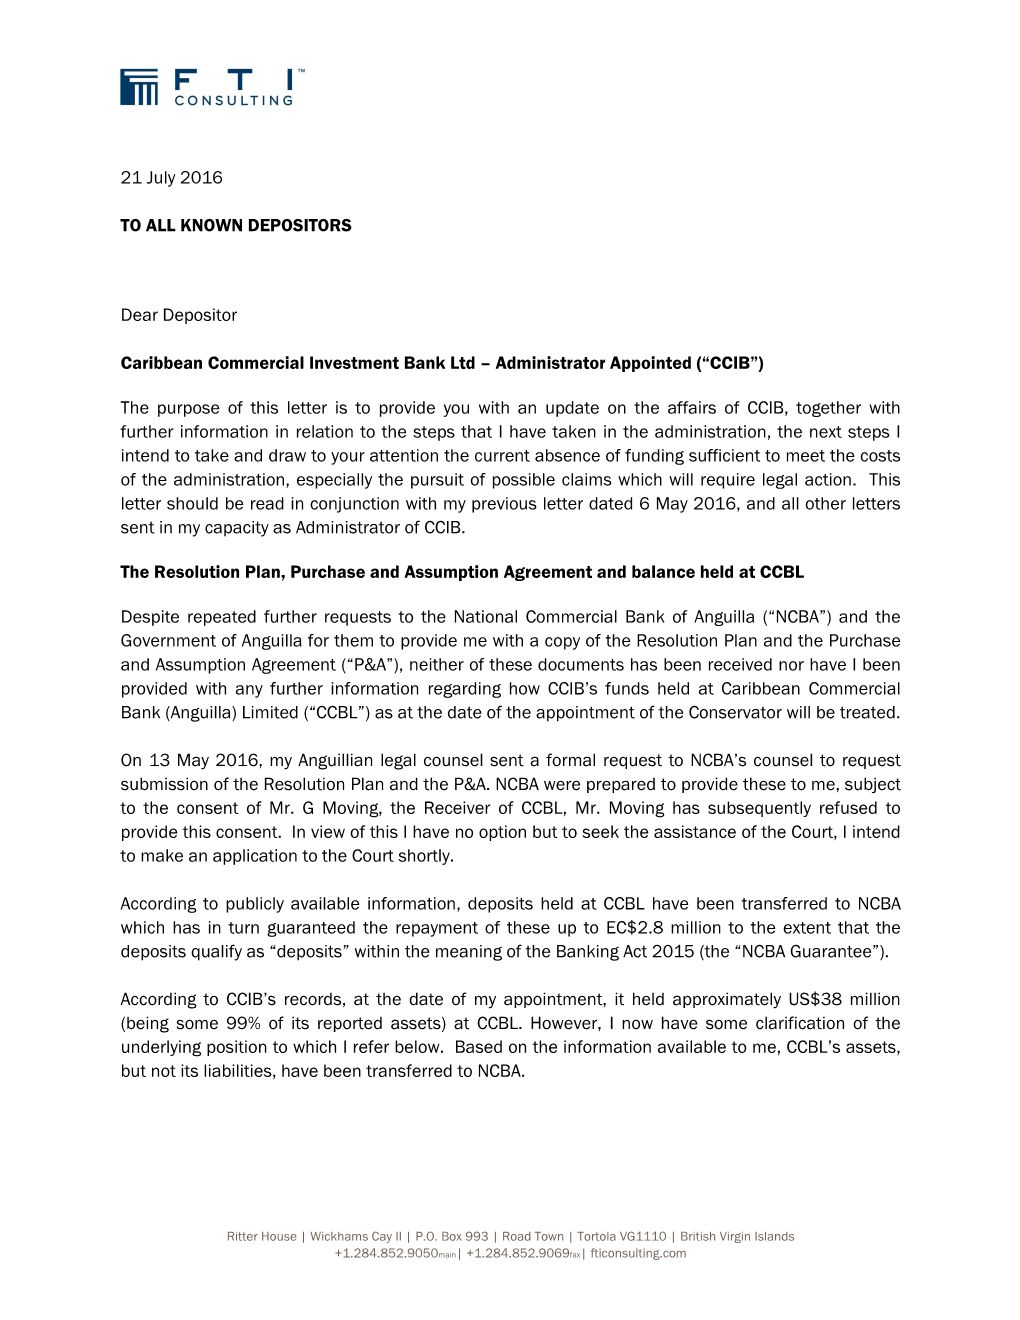 160721 Letter to Depositors CCIB